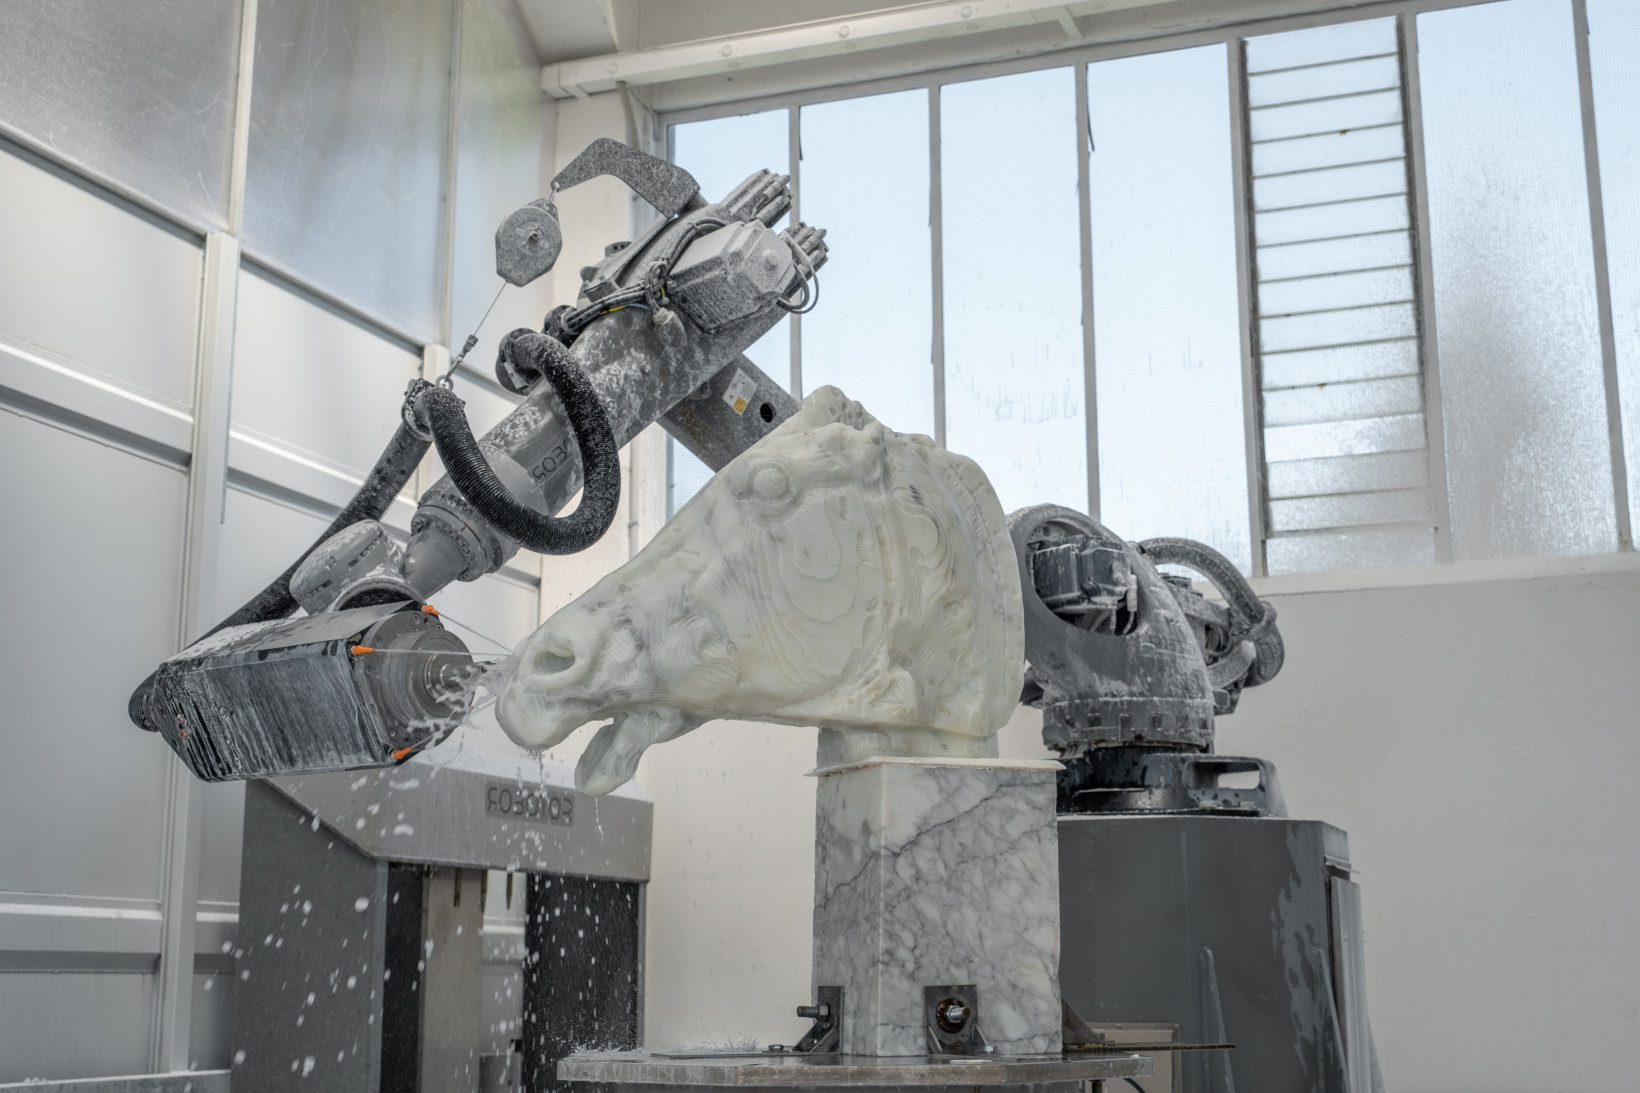 robots make sculptures horse of parthenon